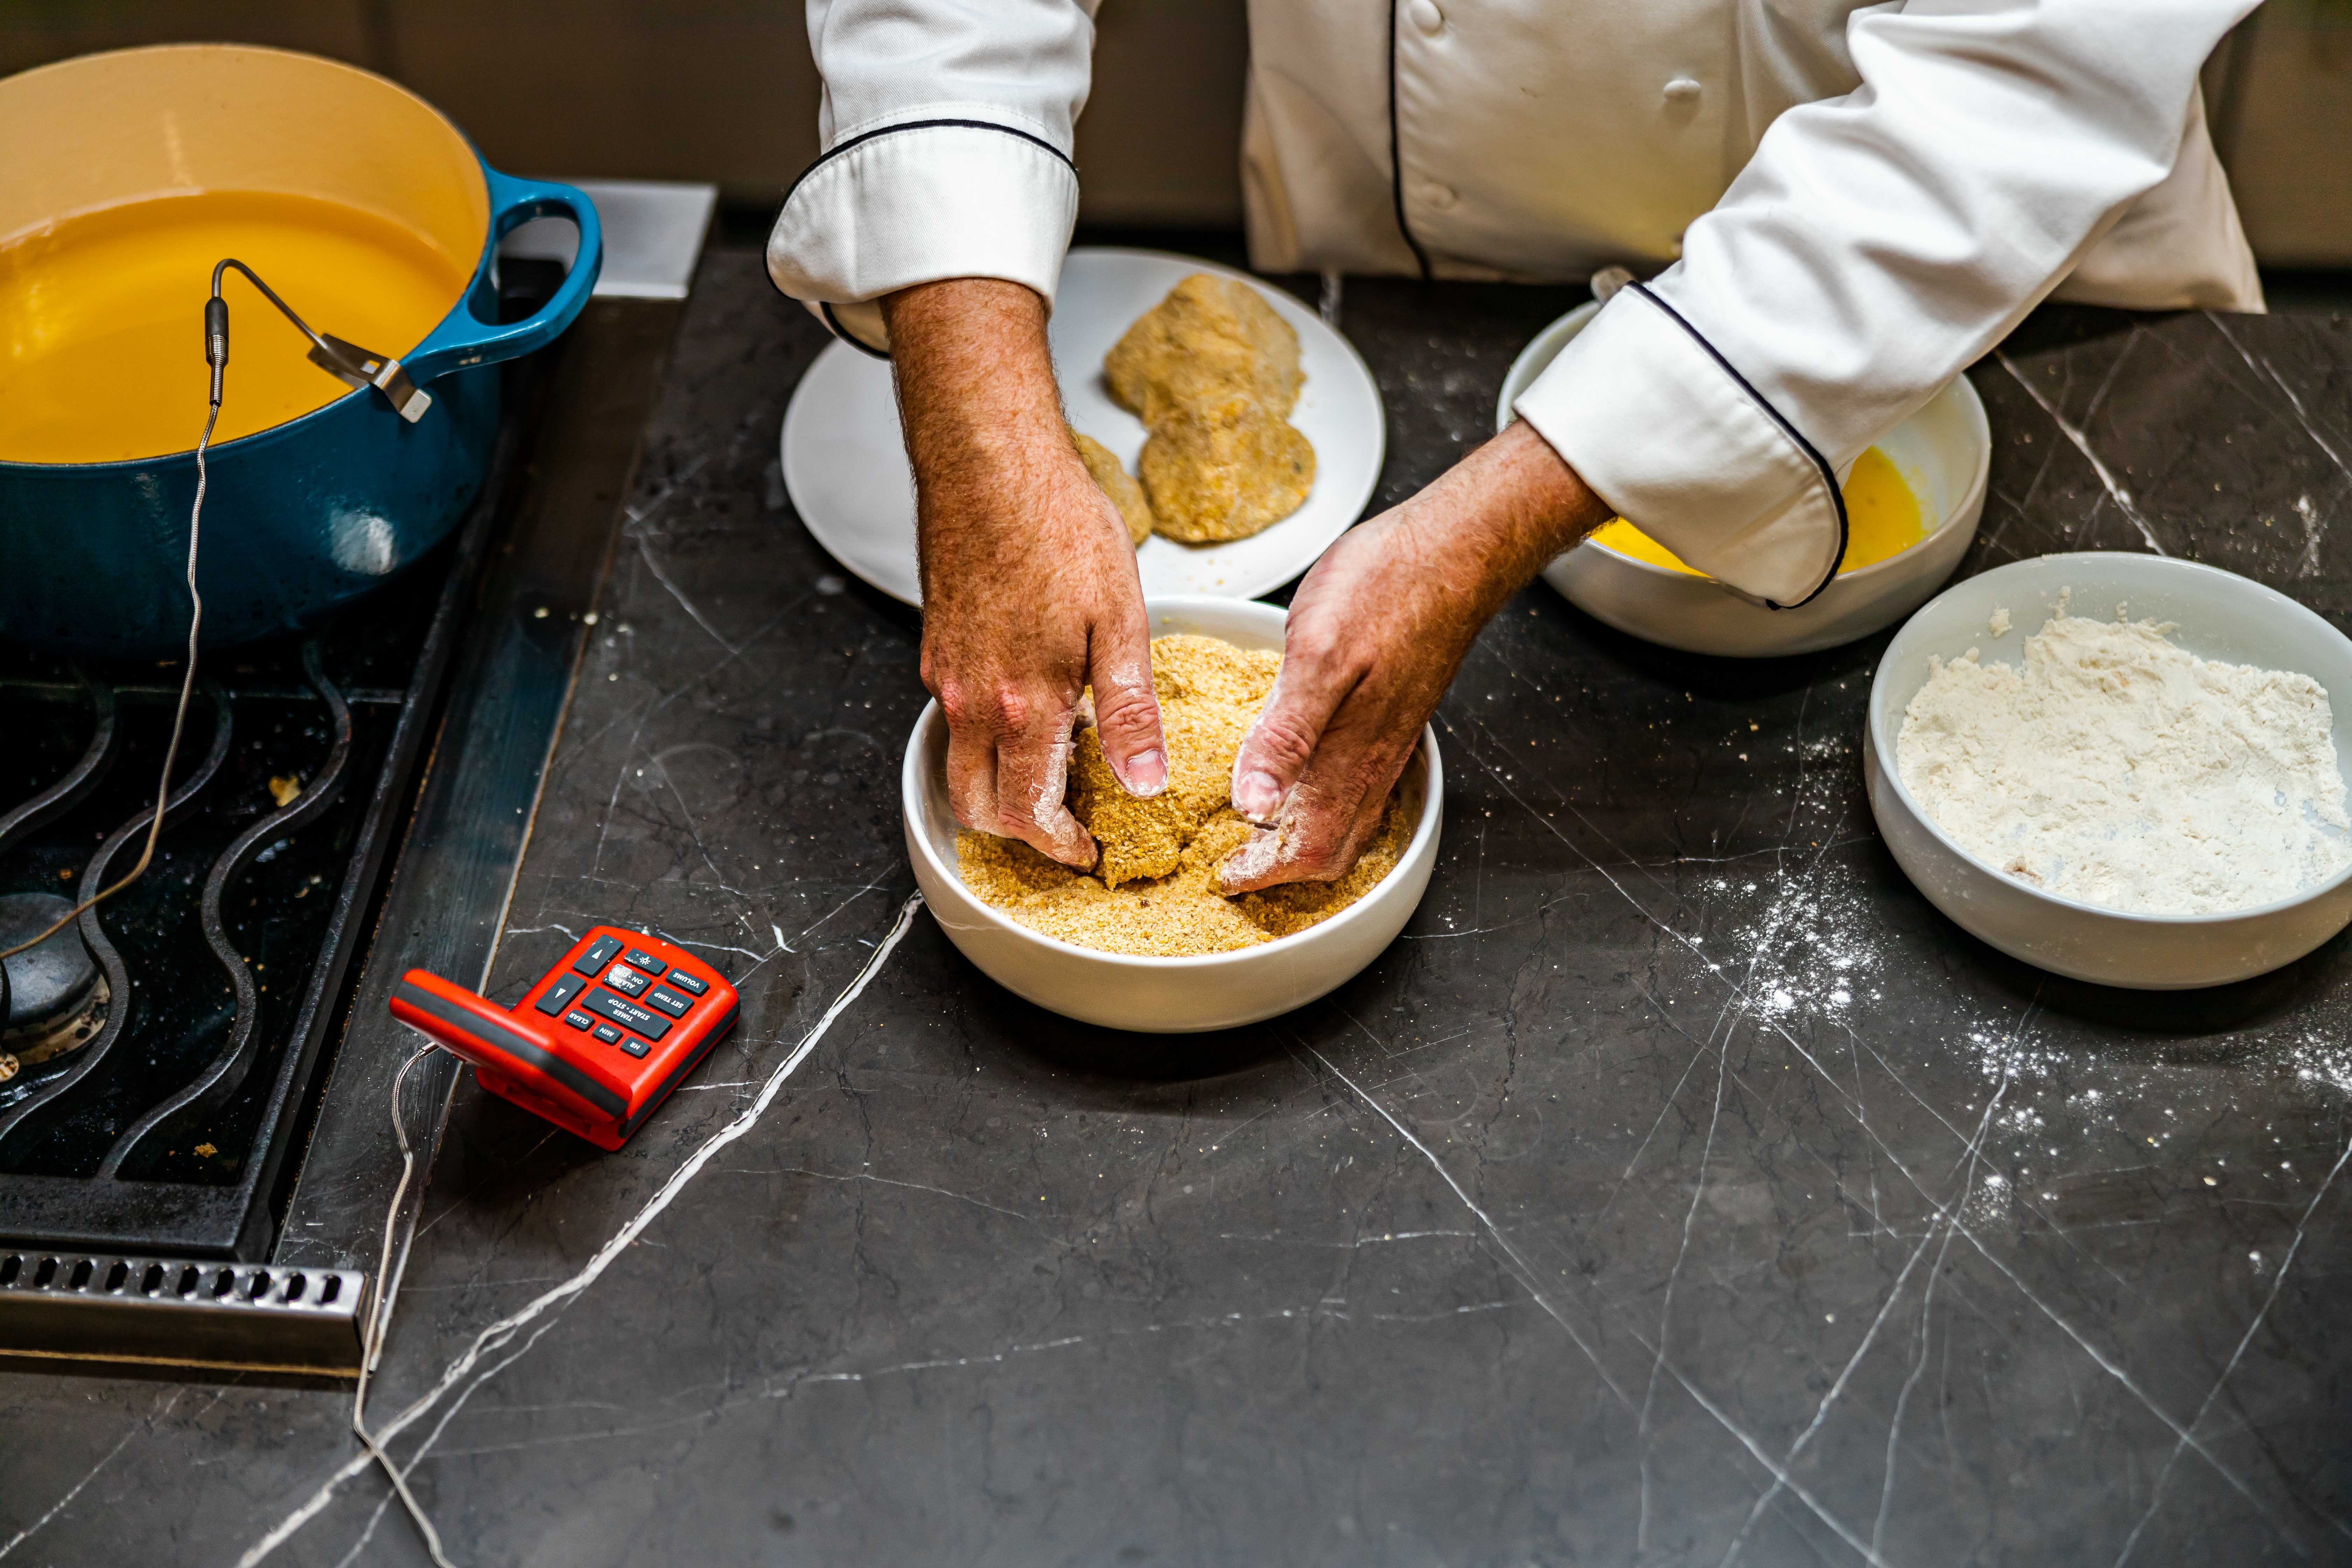 Coating the croquette in breadcrumbs